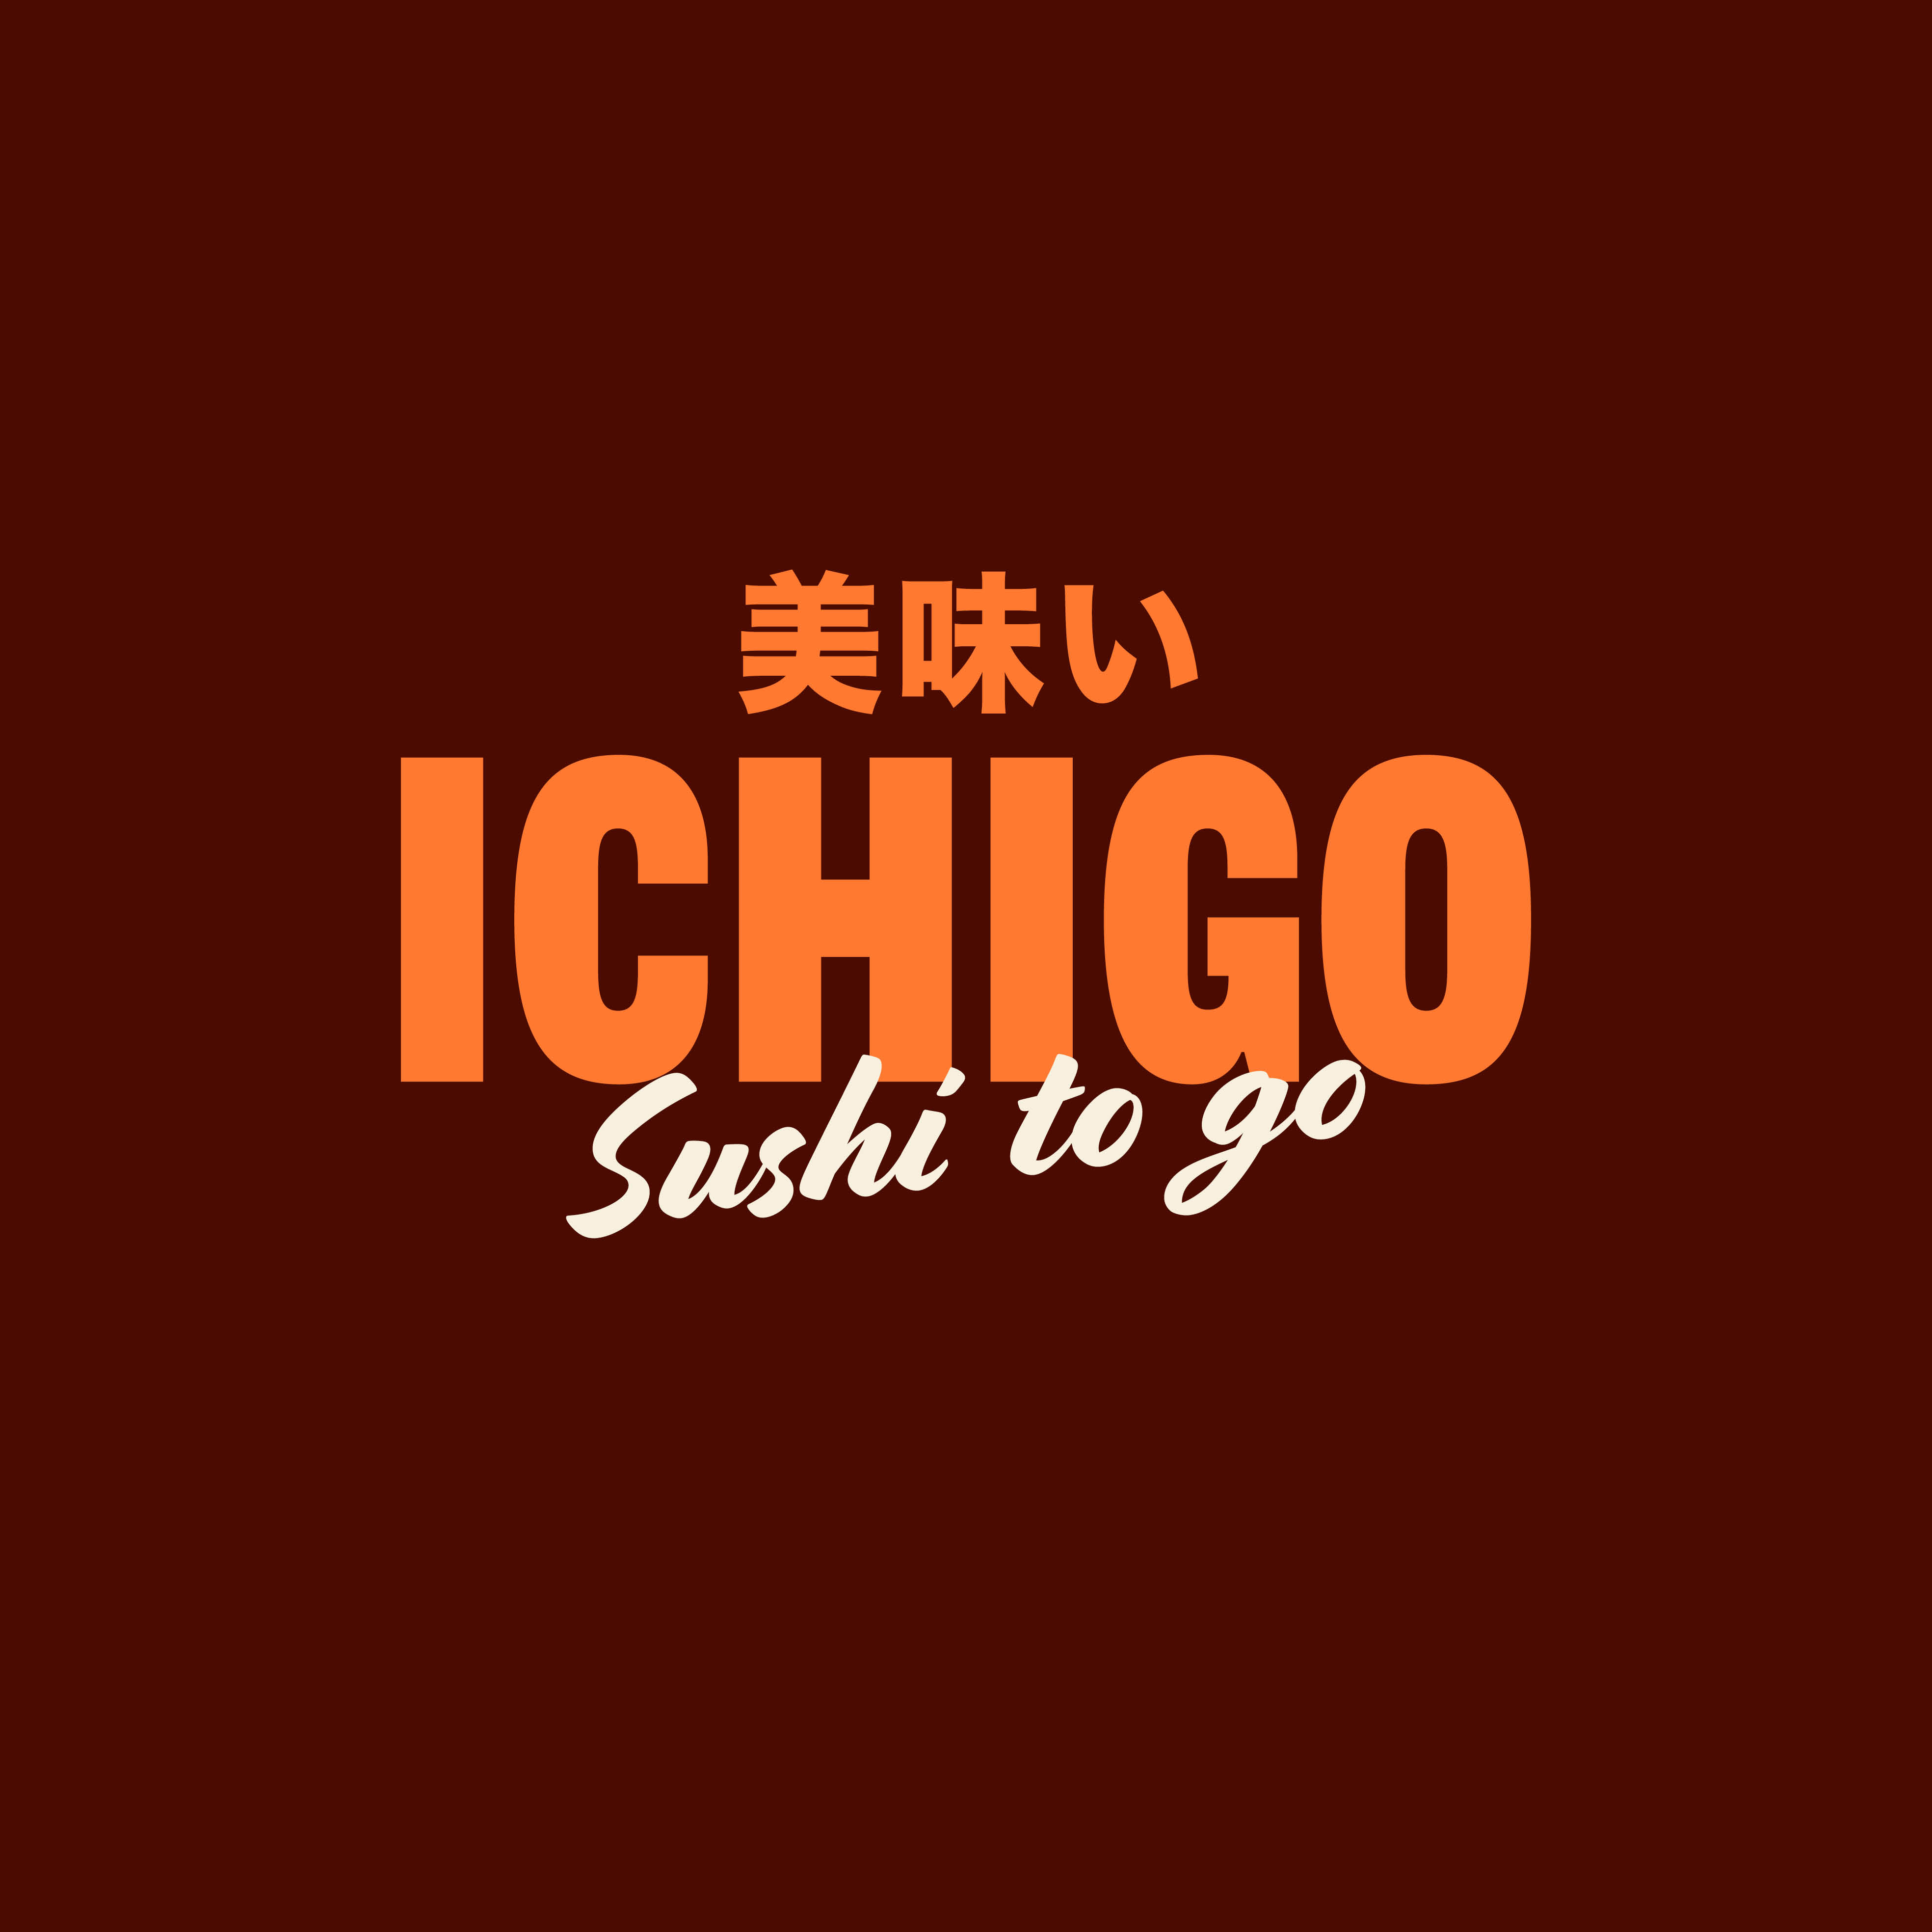 Everything Will Be Fine Studio Create Ichigo Japanese Comfort Food Branding